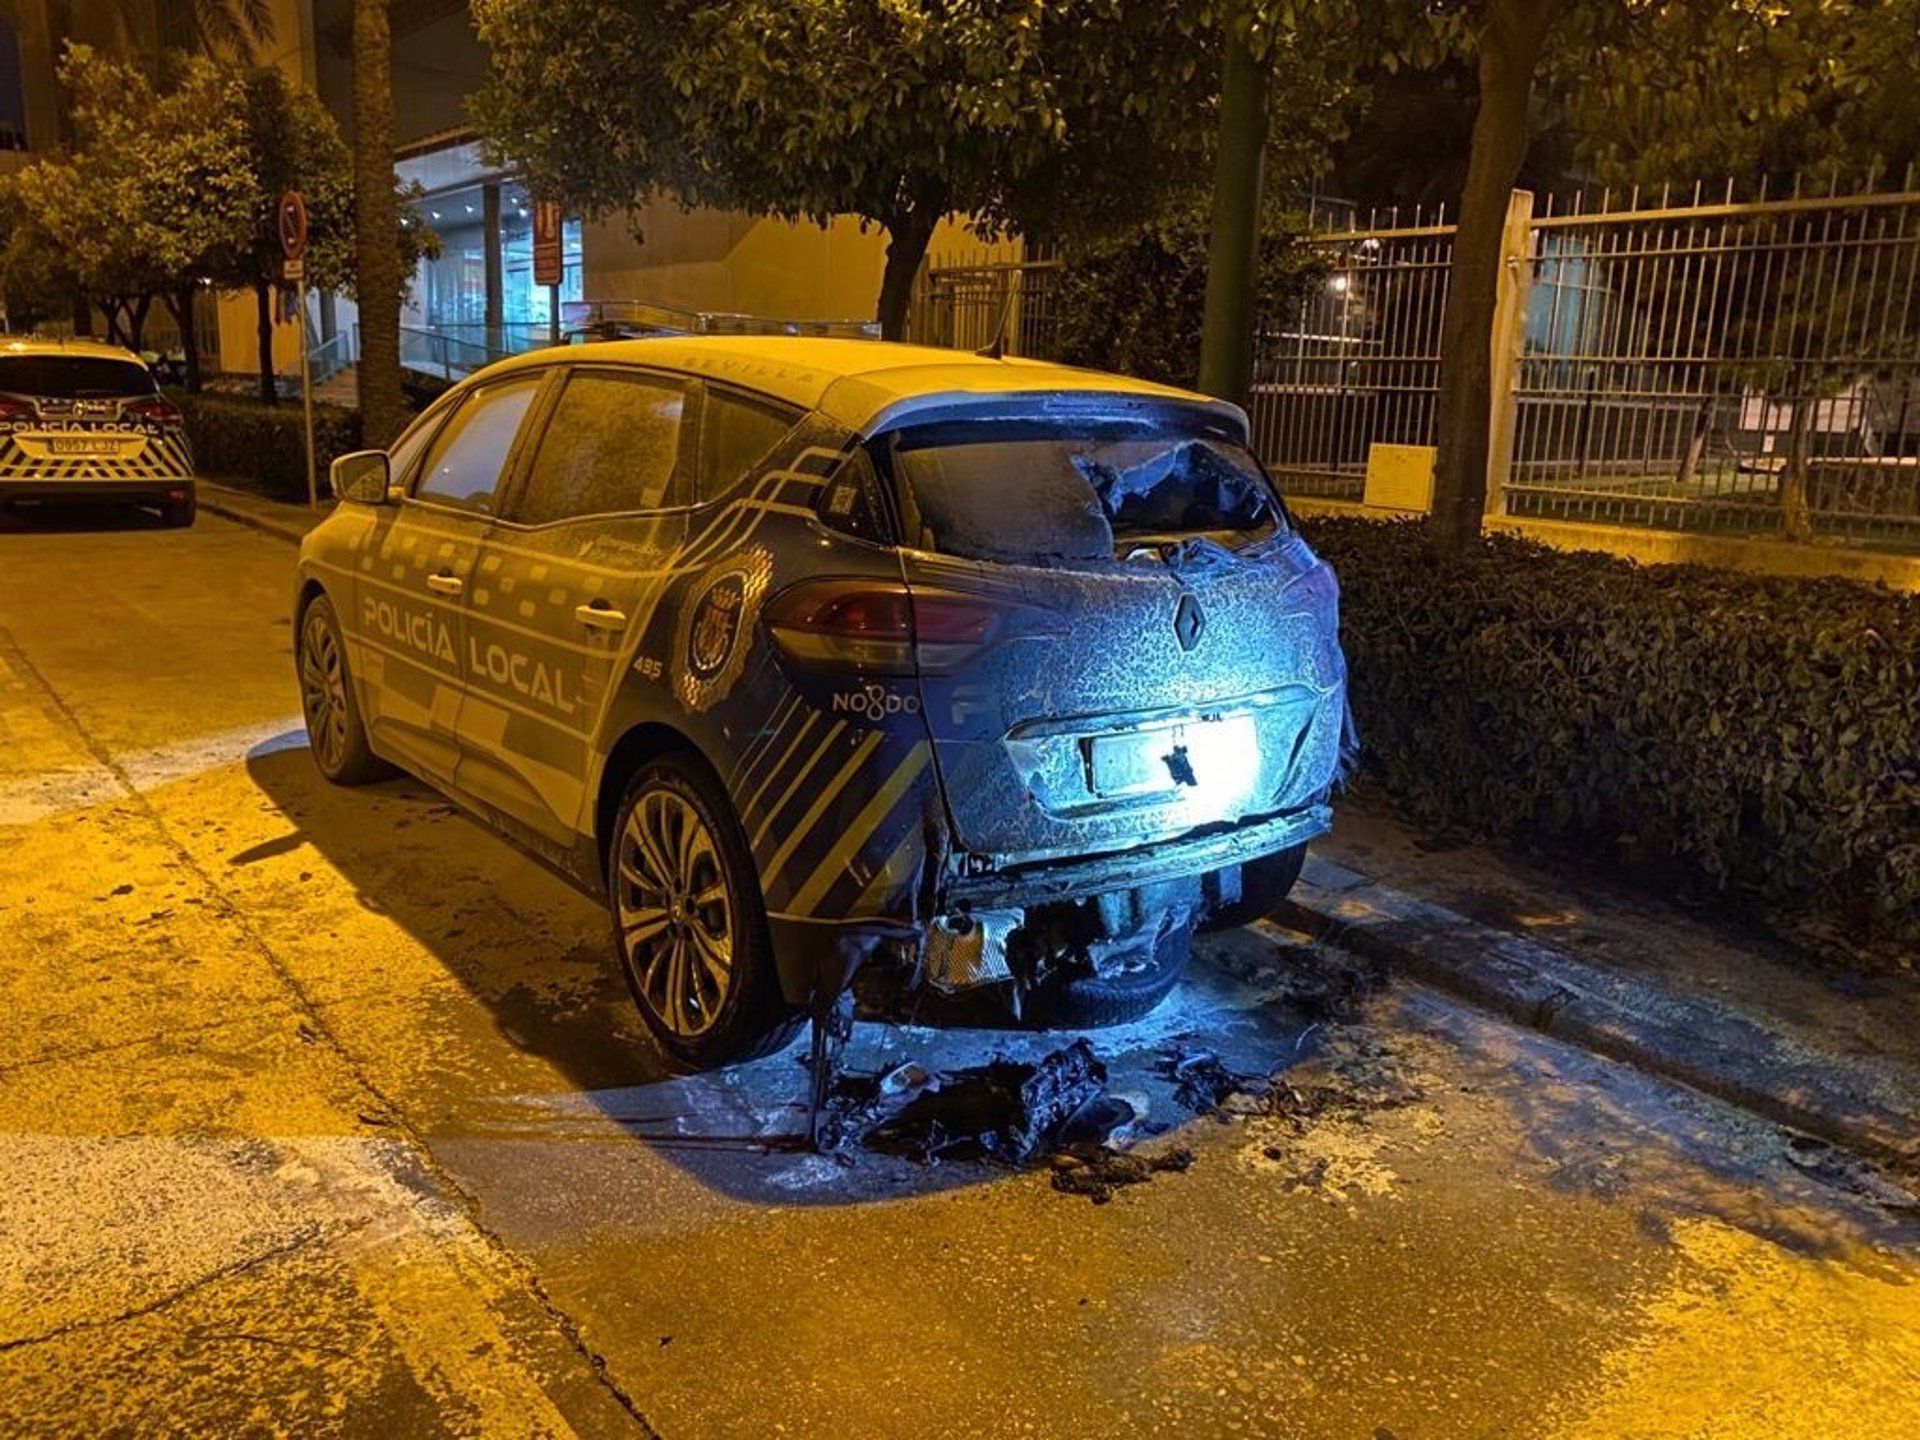 El vehículo, calcinado, en una imagen difundida por el PP de Sevilla.